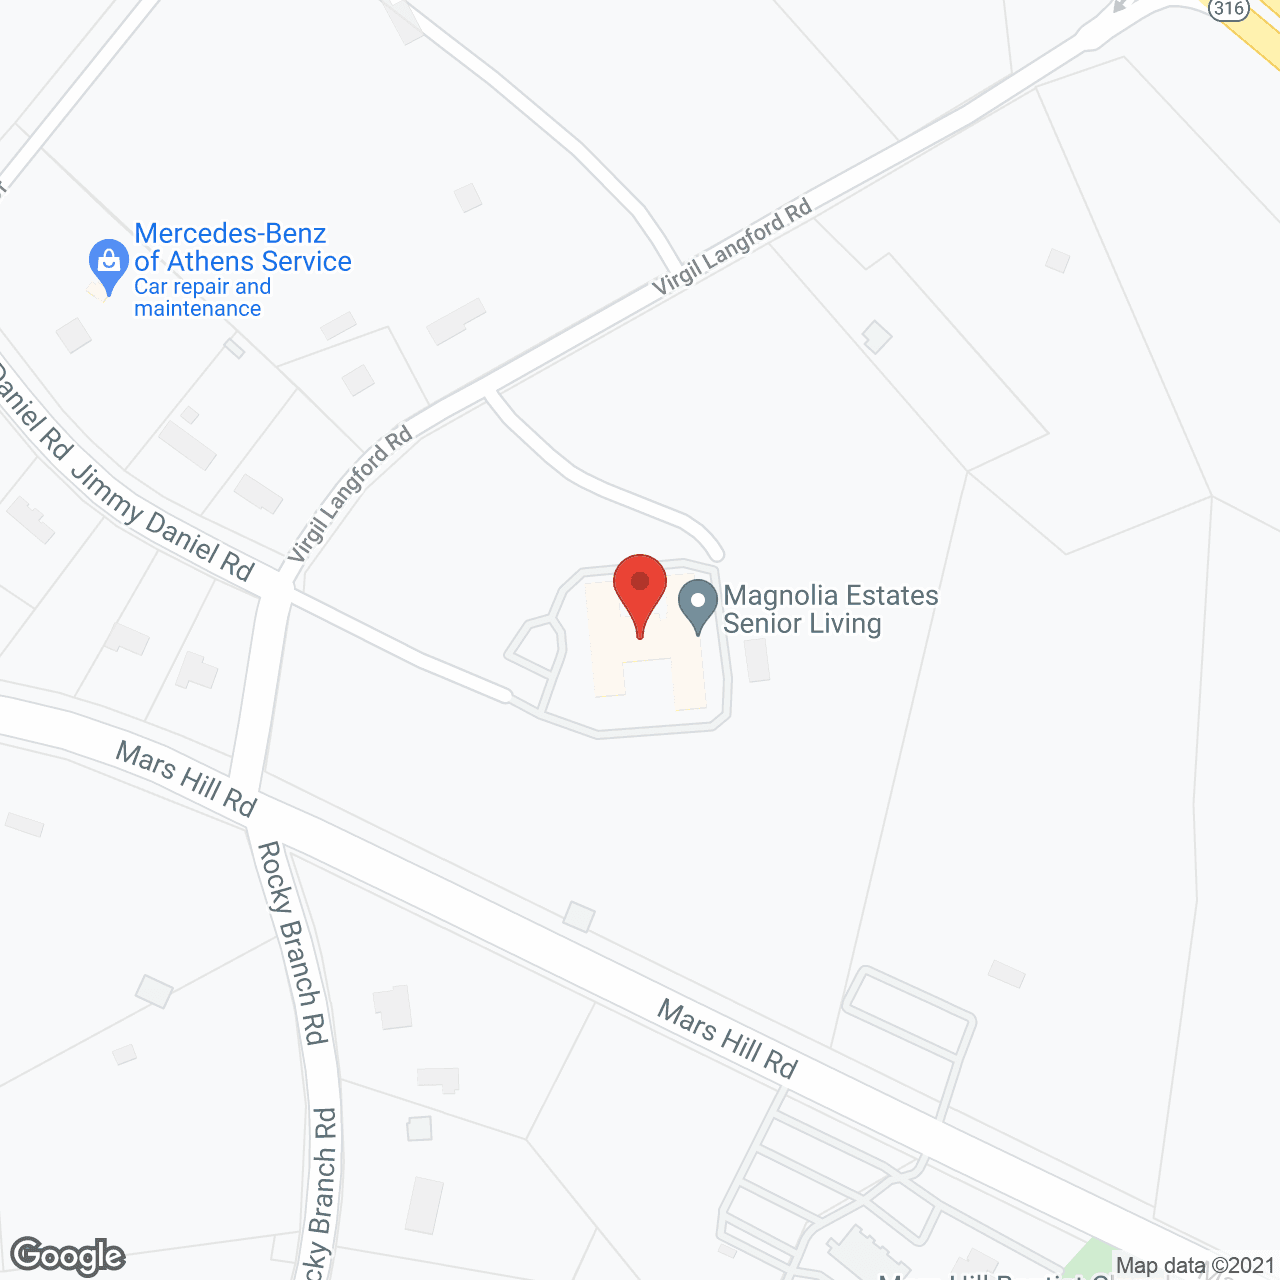 Magnolia Estates of Oconee in google map